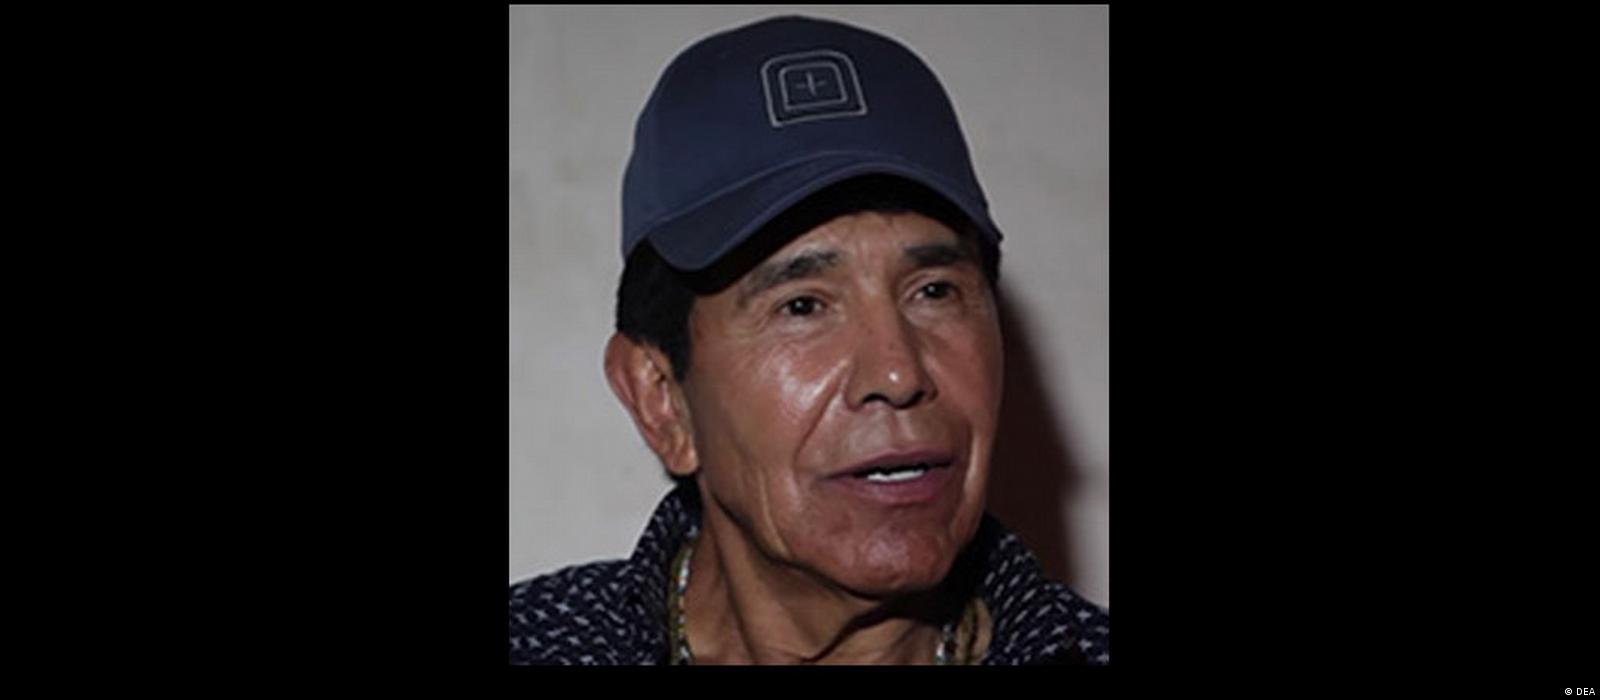 Narcotraficante Rafael Caro Quintero é capturado no México – DW – 16/07/2022